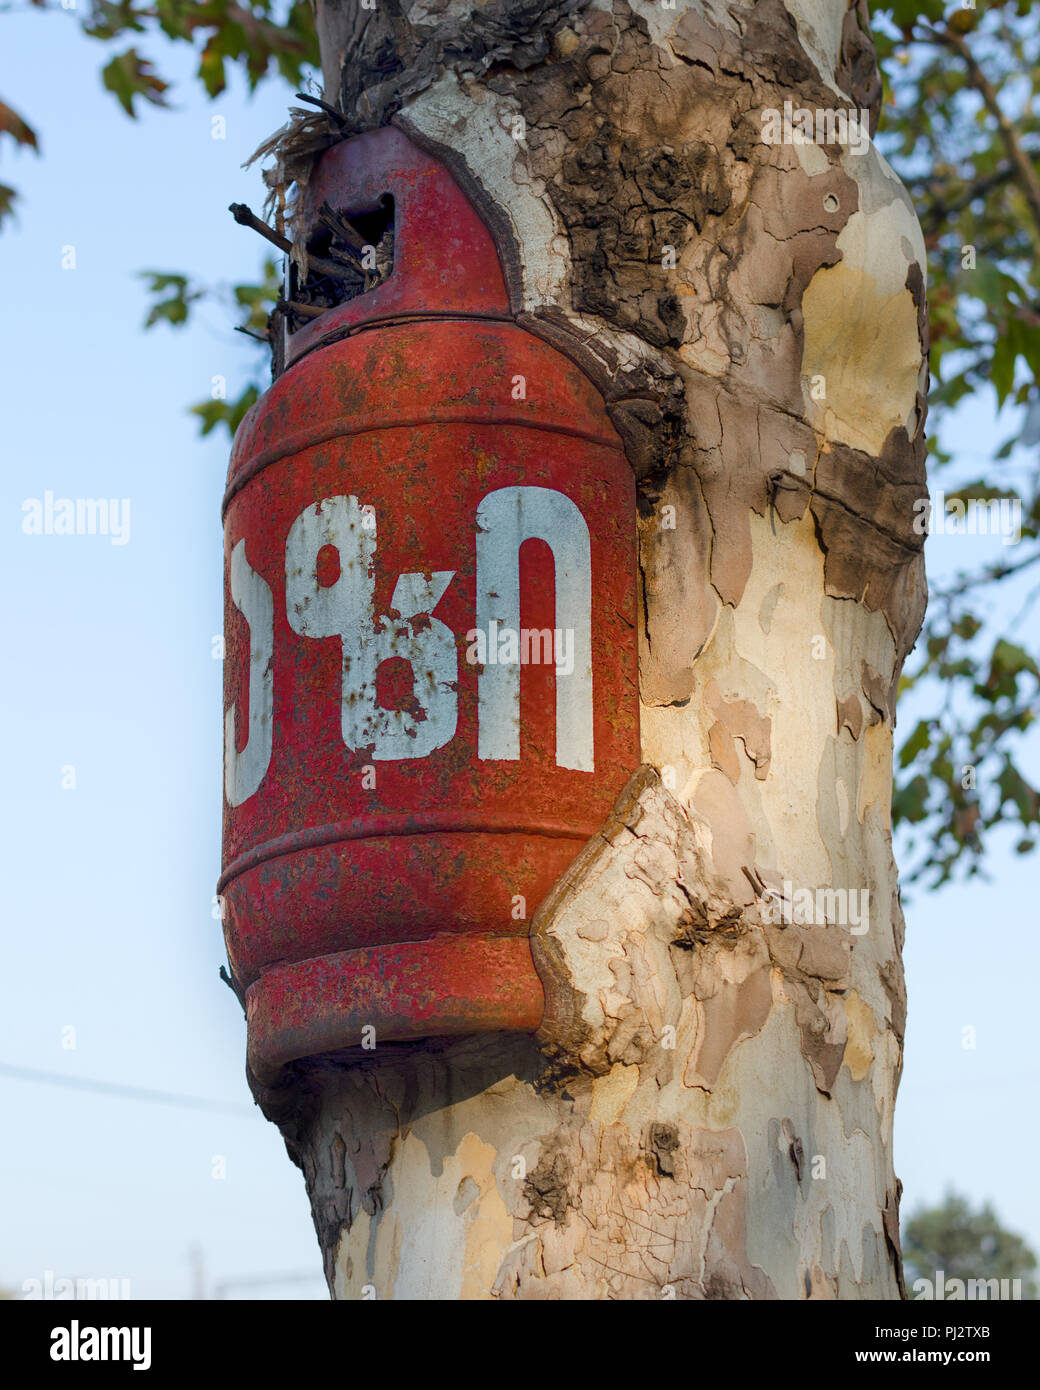 Leere Gasflasche eingewachsene in live Baum, der durch die wachsenden Baum der ein Fremdkörper, der Kraft der Natur. Sieg der Natur über menschliches Eingreifen. Stockfoto